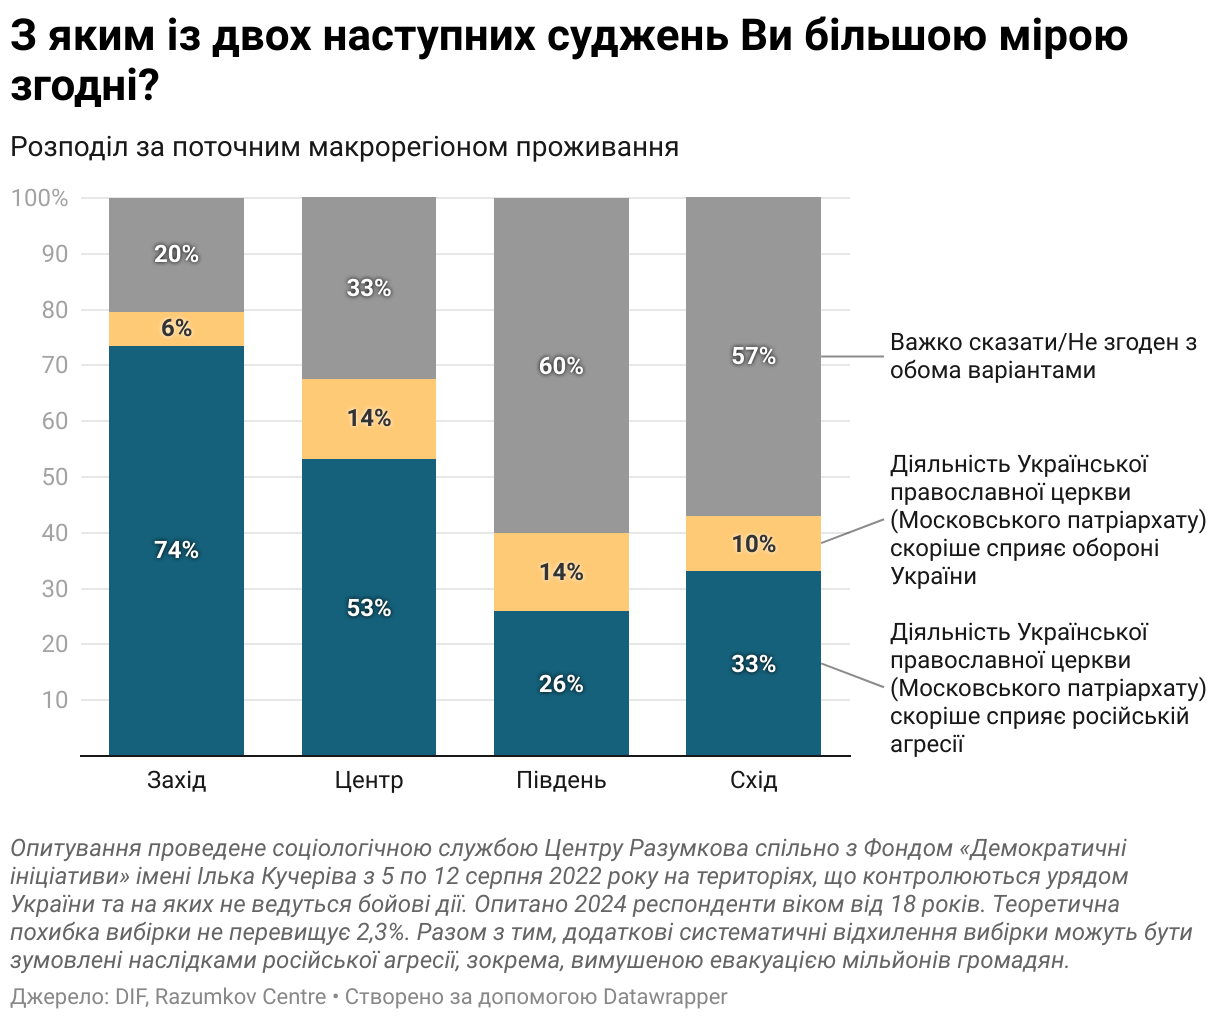 Українці стали гірше ставитися до СРСР, а рівень прихильності до ідей Бандери зріс на 20% – опитування 